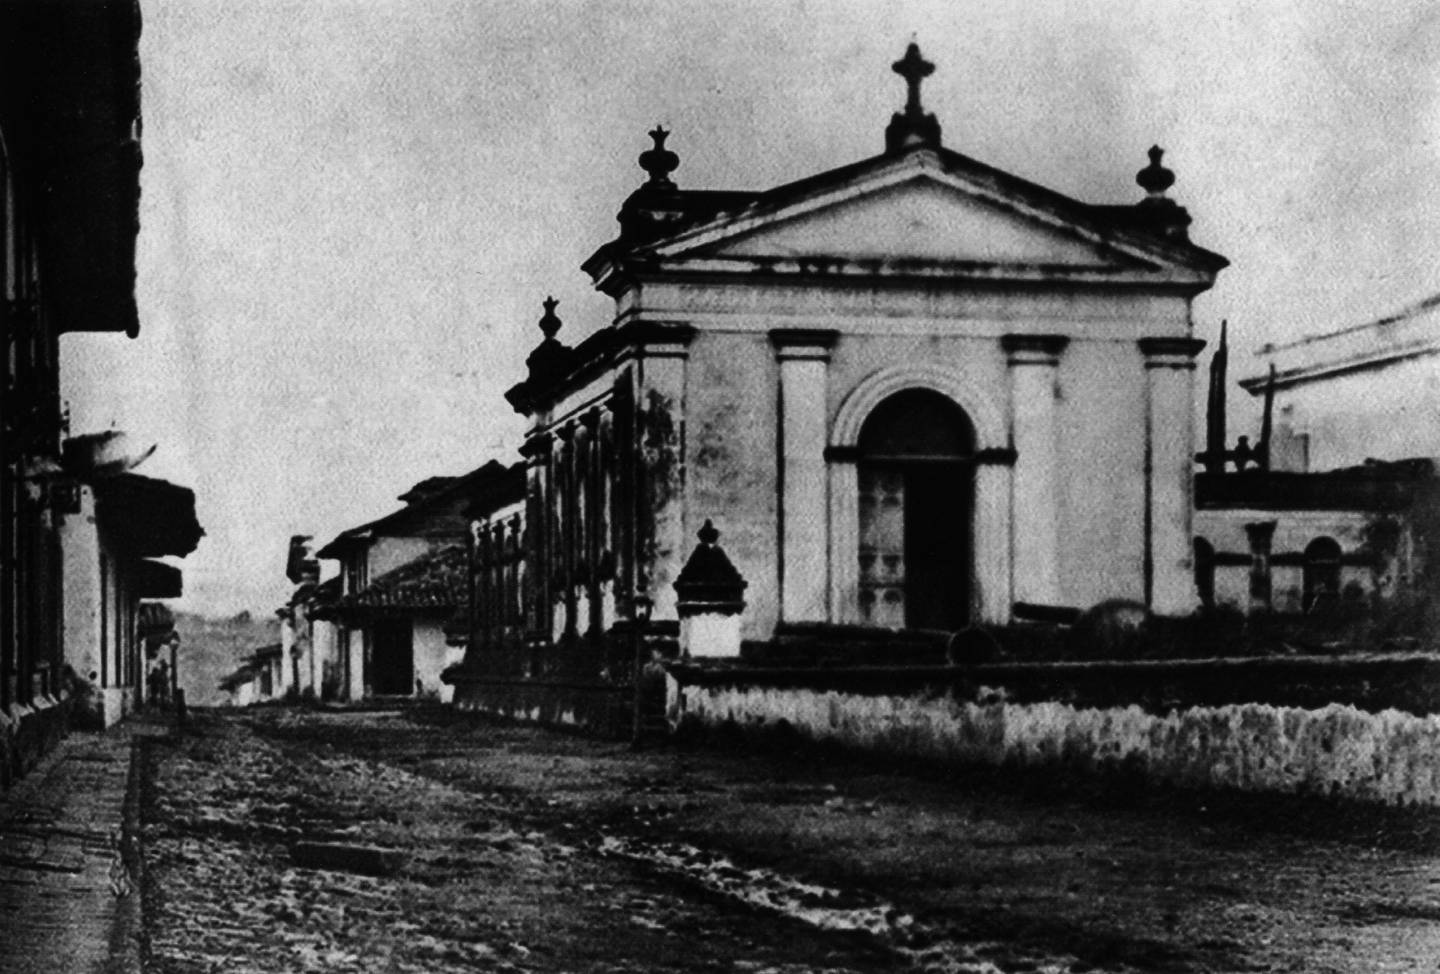 La capilla del Sagrario en 1871, durante el episcopado de monseñor Anselmo Llorente y Lafuente,
primer obispo de Costa Rica.